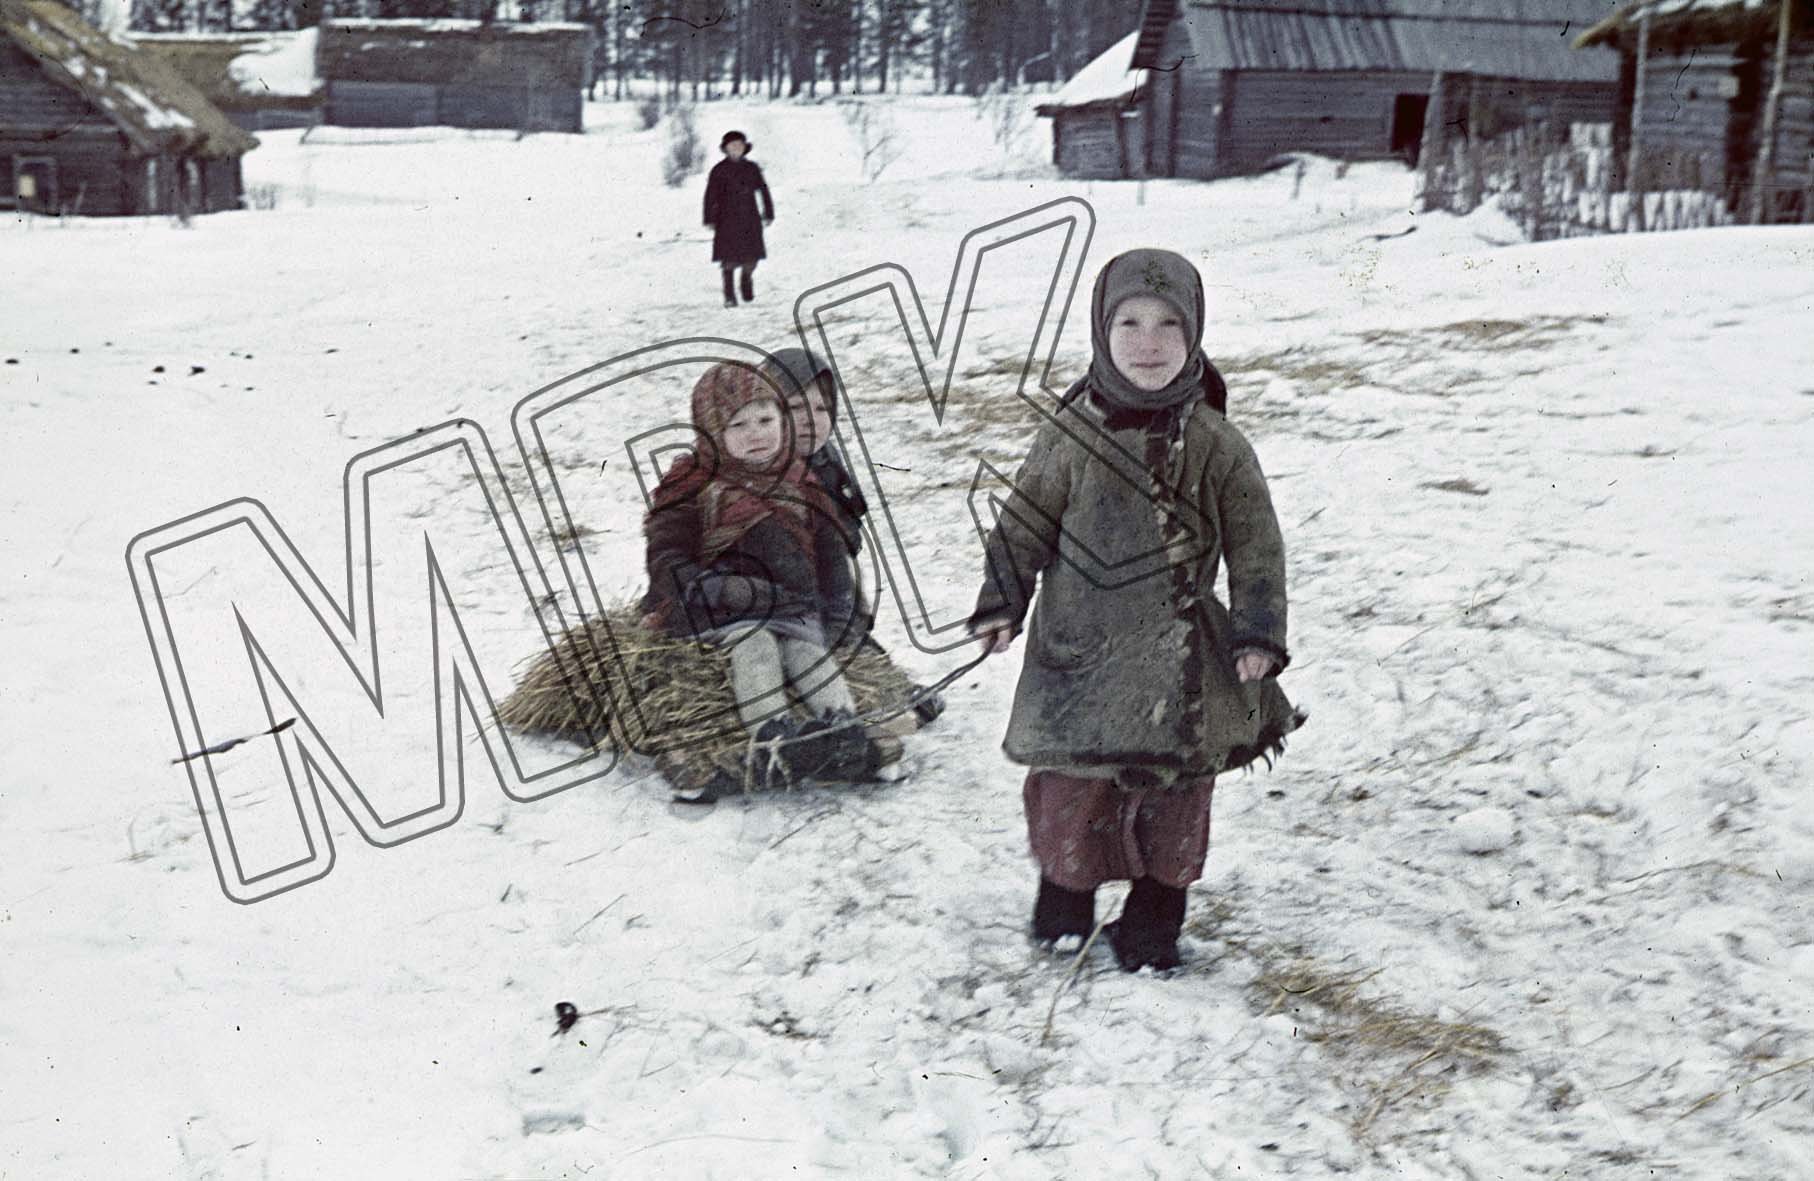 Fotografie: Sowjetische Kinder mit einem Schlitten, Terenteevo, März 1942 (Museum Berlin-Karlshorst RR-P)